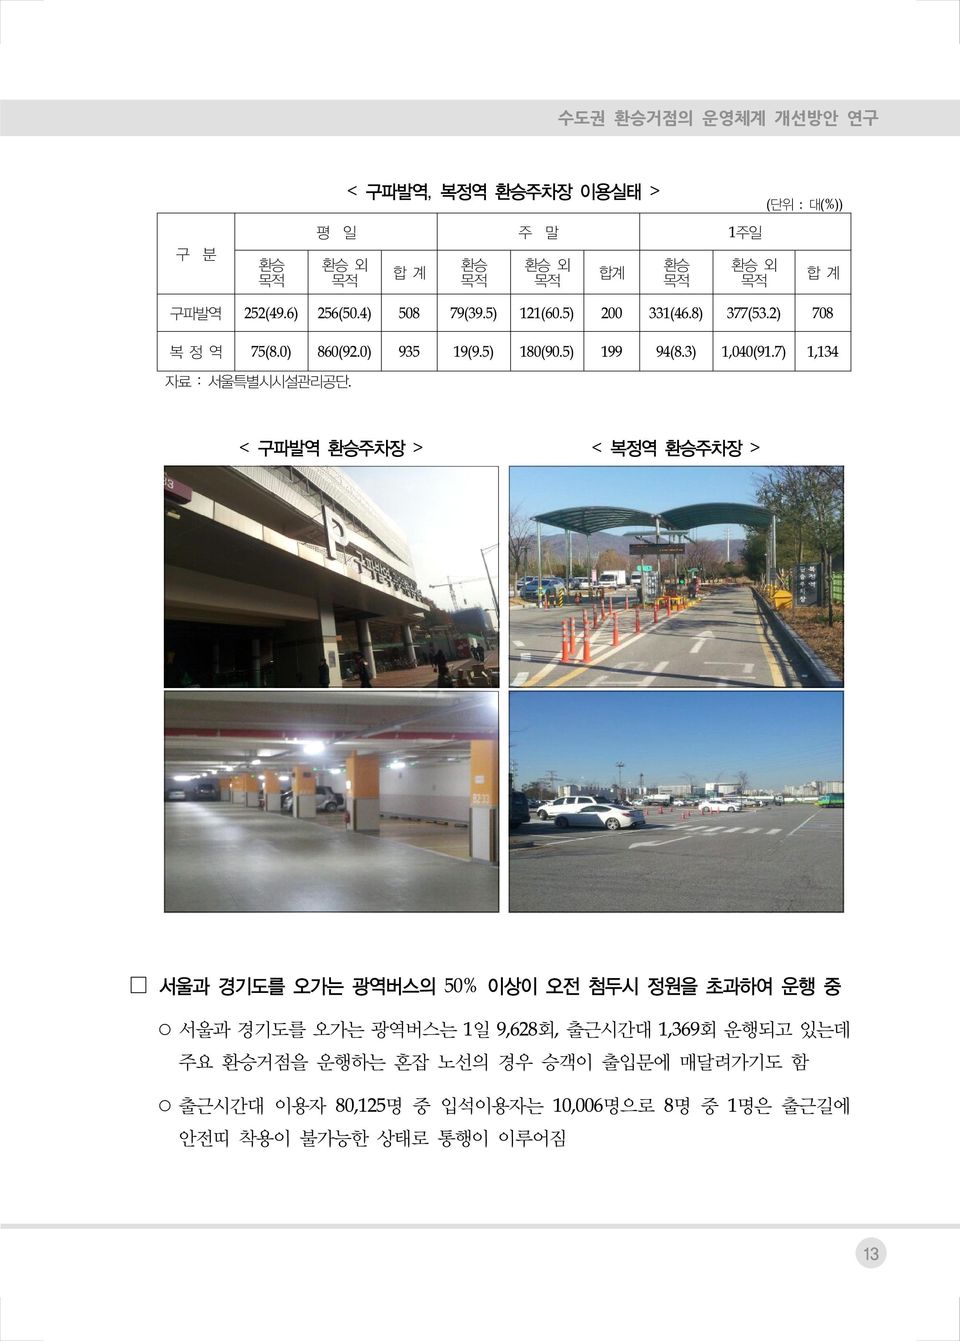 7) 1,134 자료 : 서울특별시시설관리공단.